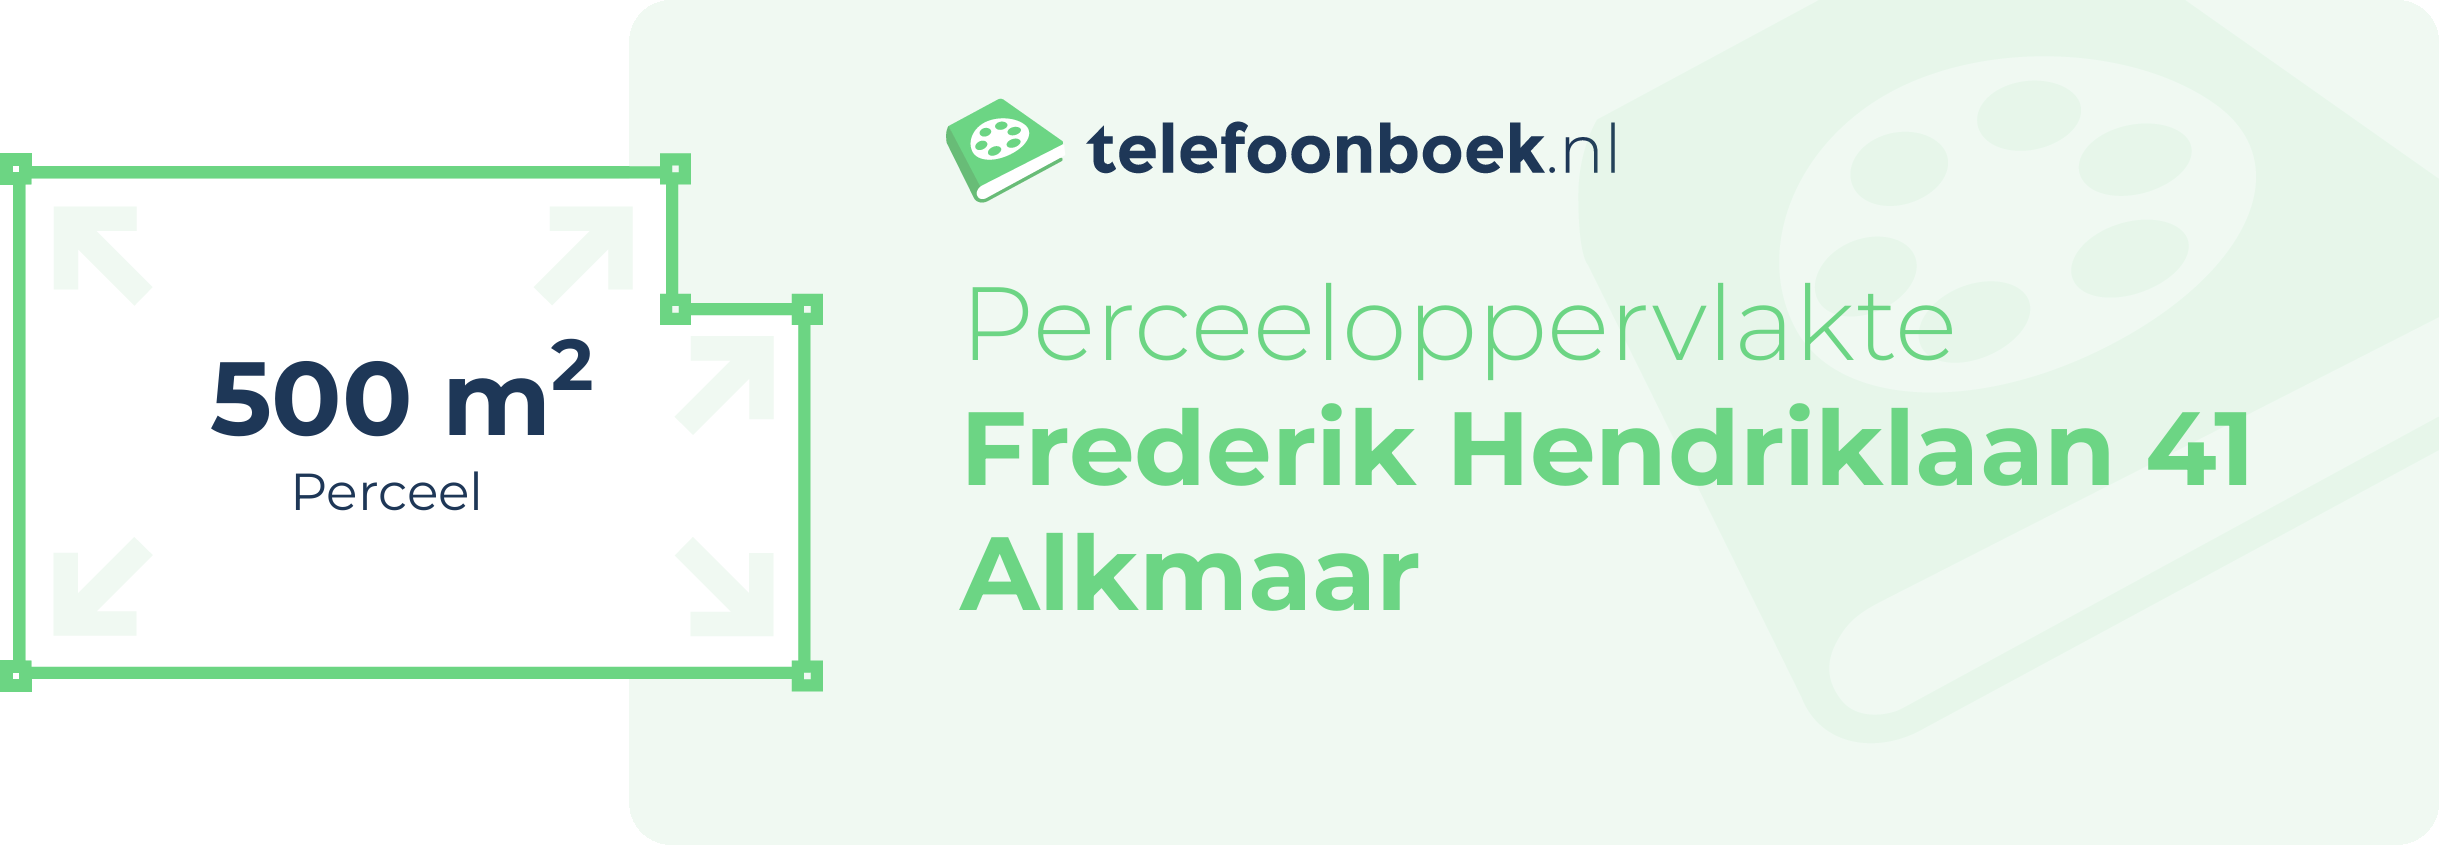 Perceeloppervlakte Frederik Hendriklaan 41 Alkmaar